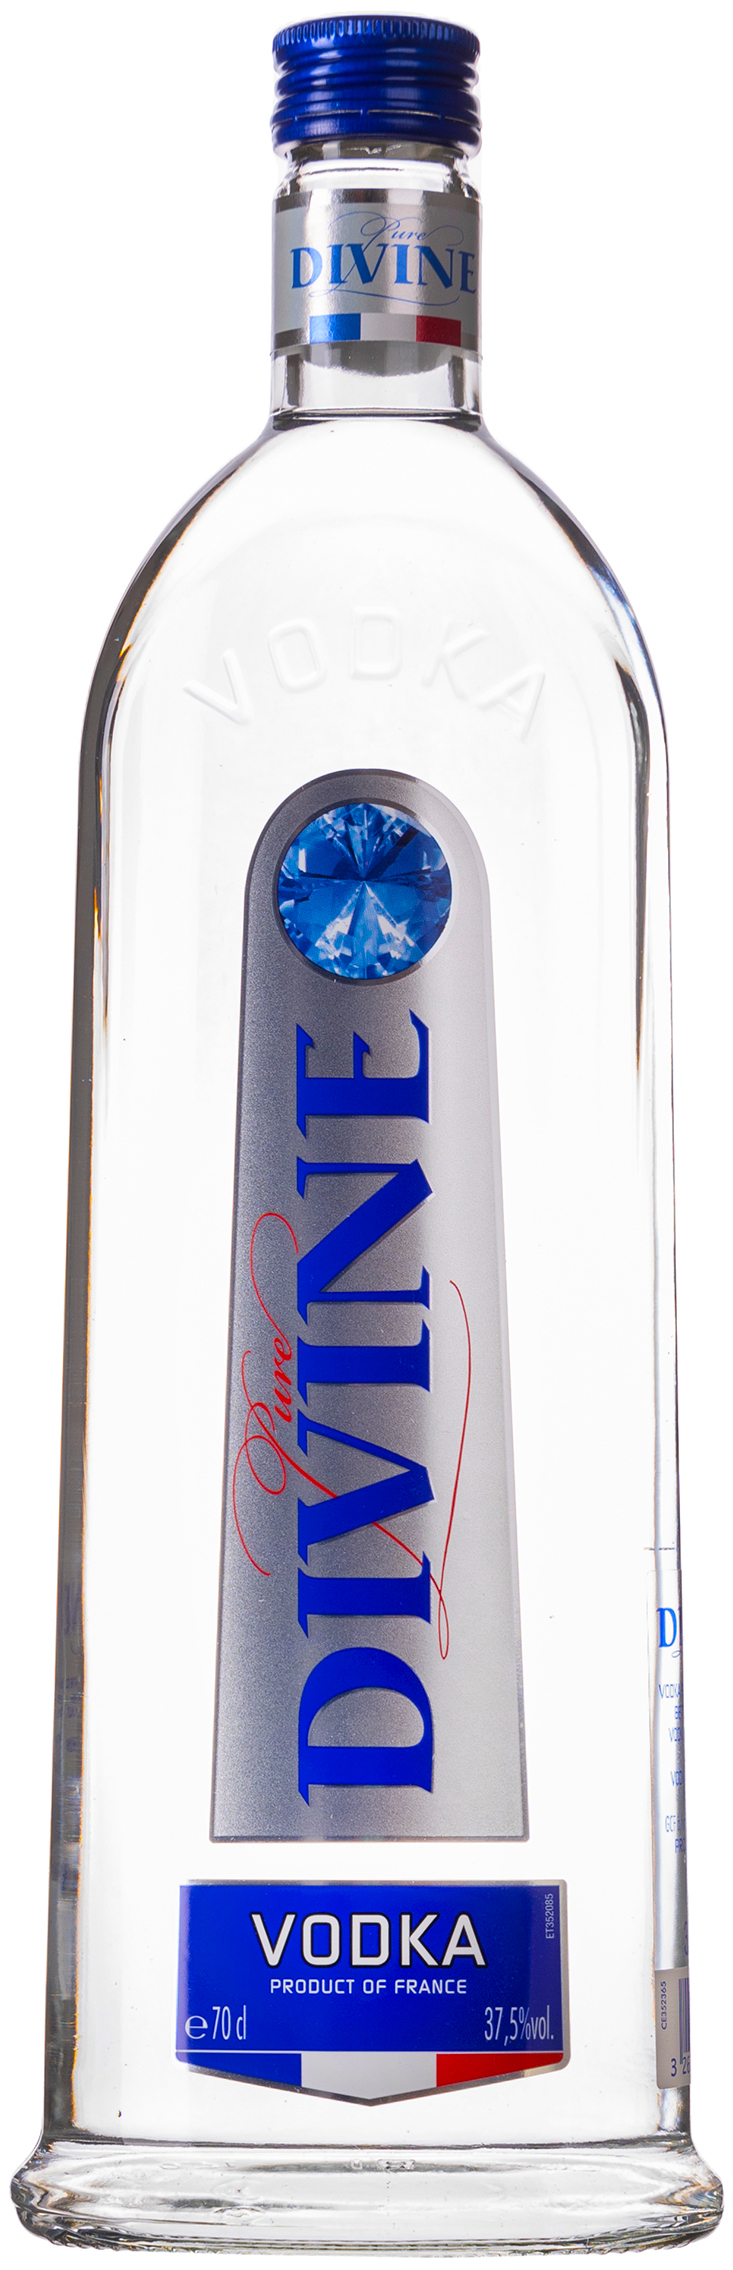 Pure Divine Vodka 37,5% vol. 470186 0,7L 